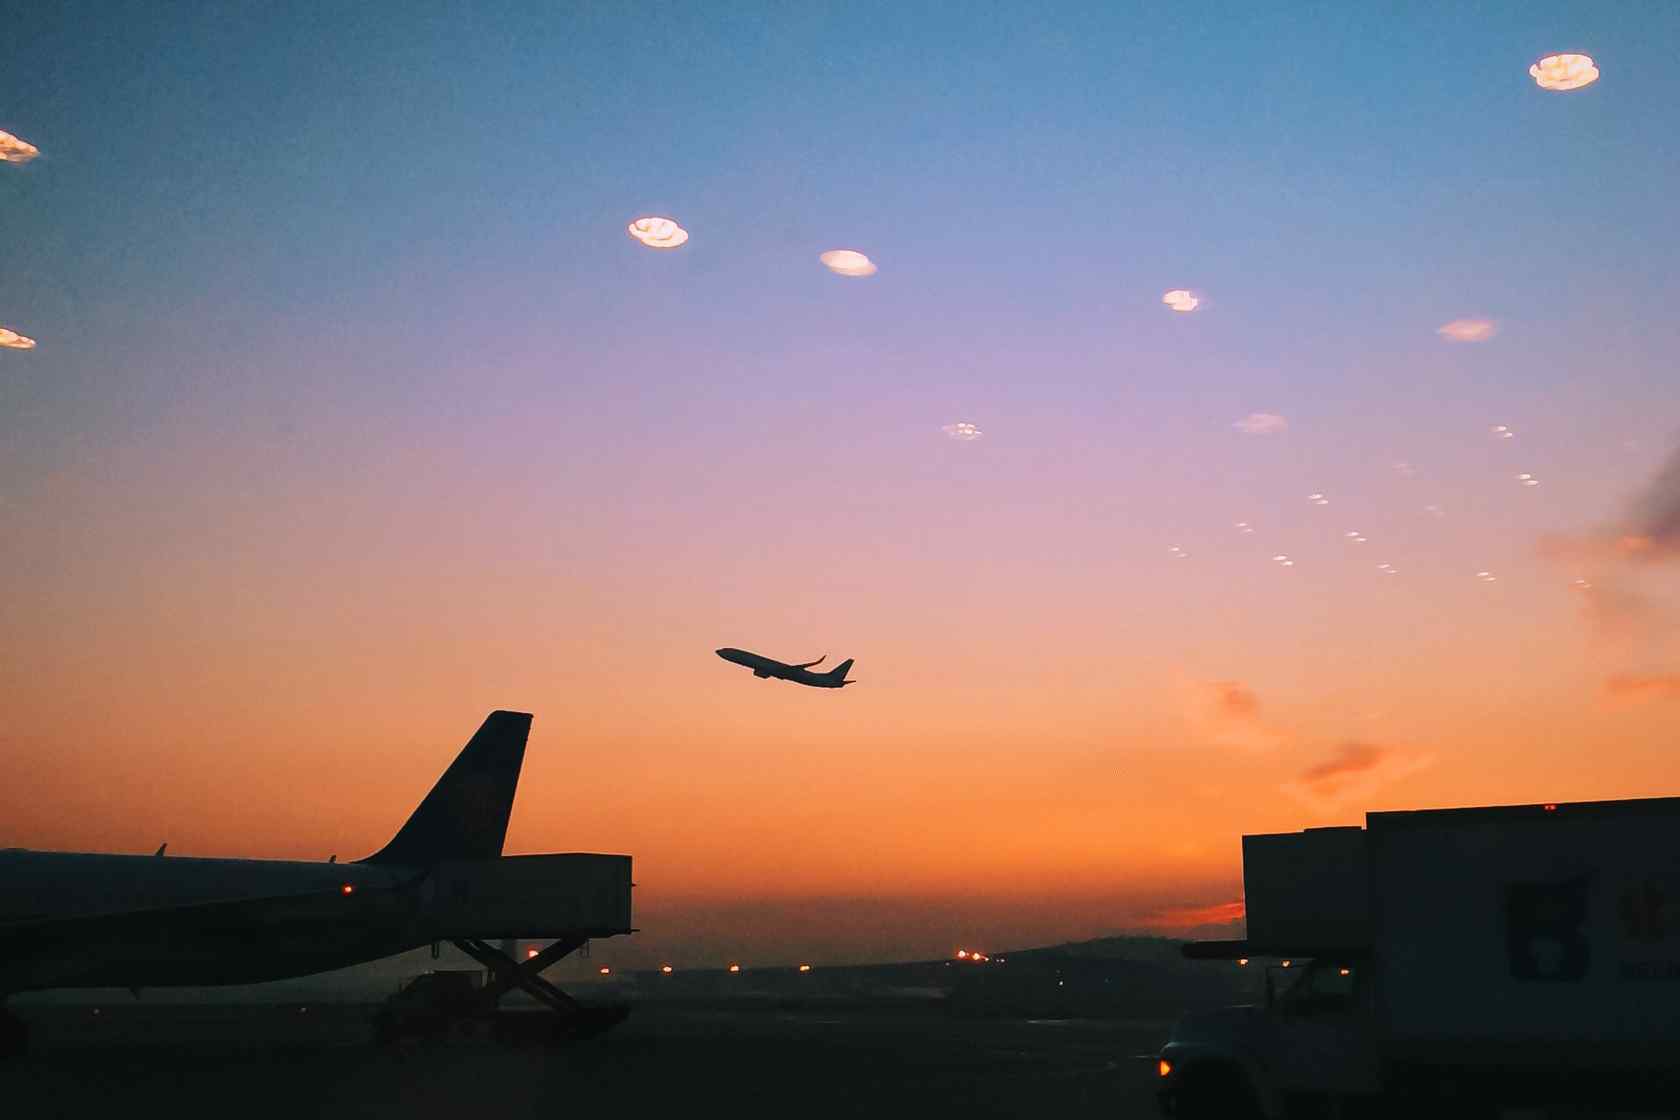 夕阳下起飞的飞机唯美风景桌面壁纸